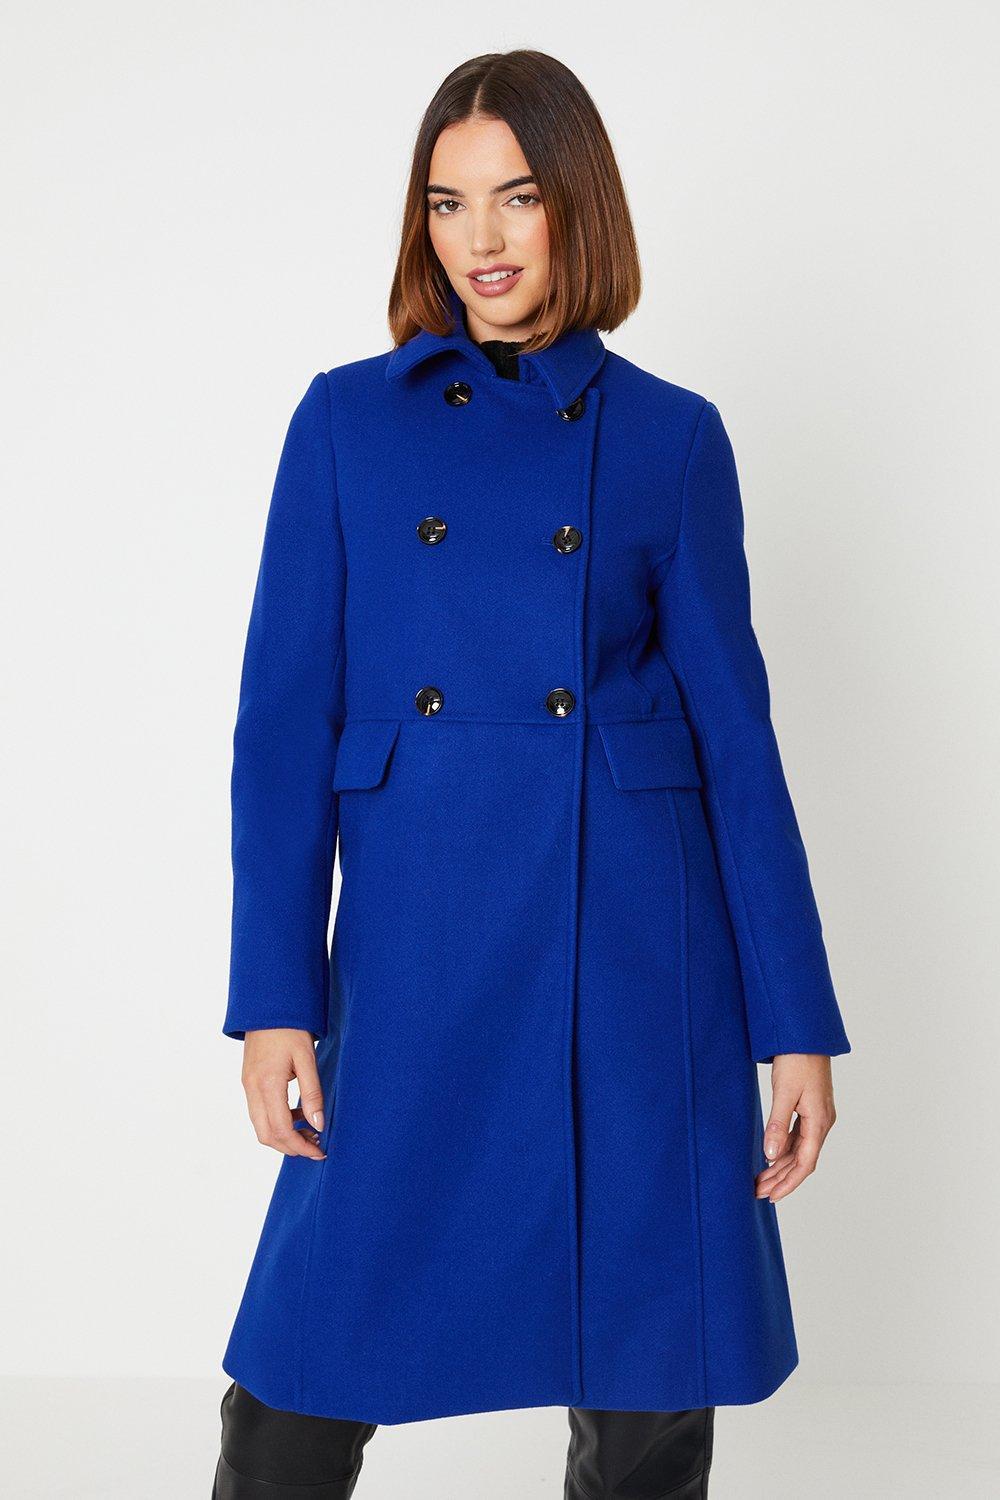 Oasis Smart Dolly Coat in Blue | Lyst UK